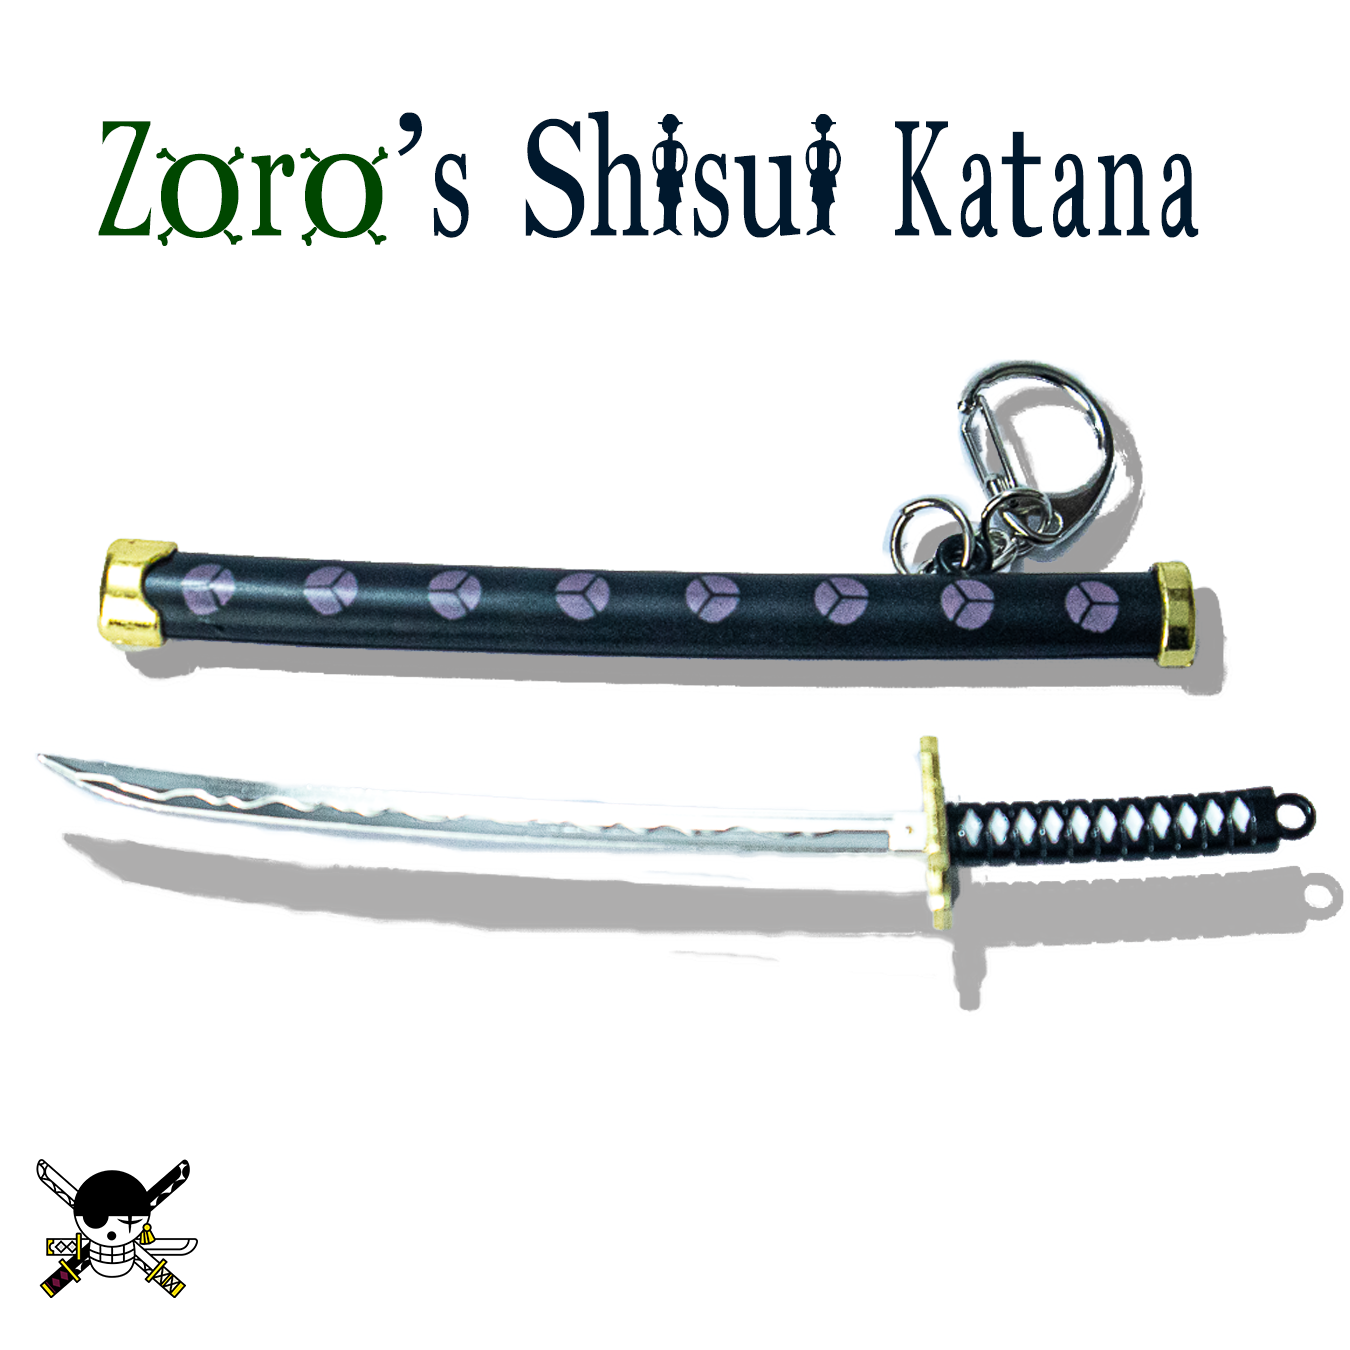 Zoro Shusui Katana Mini Keychain One Piece Collectible Item